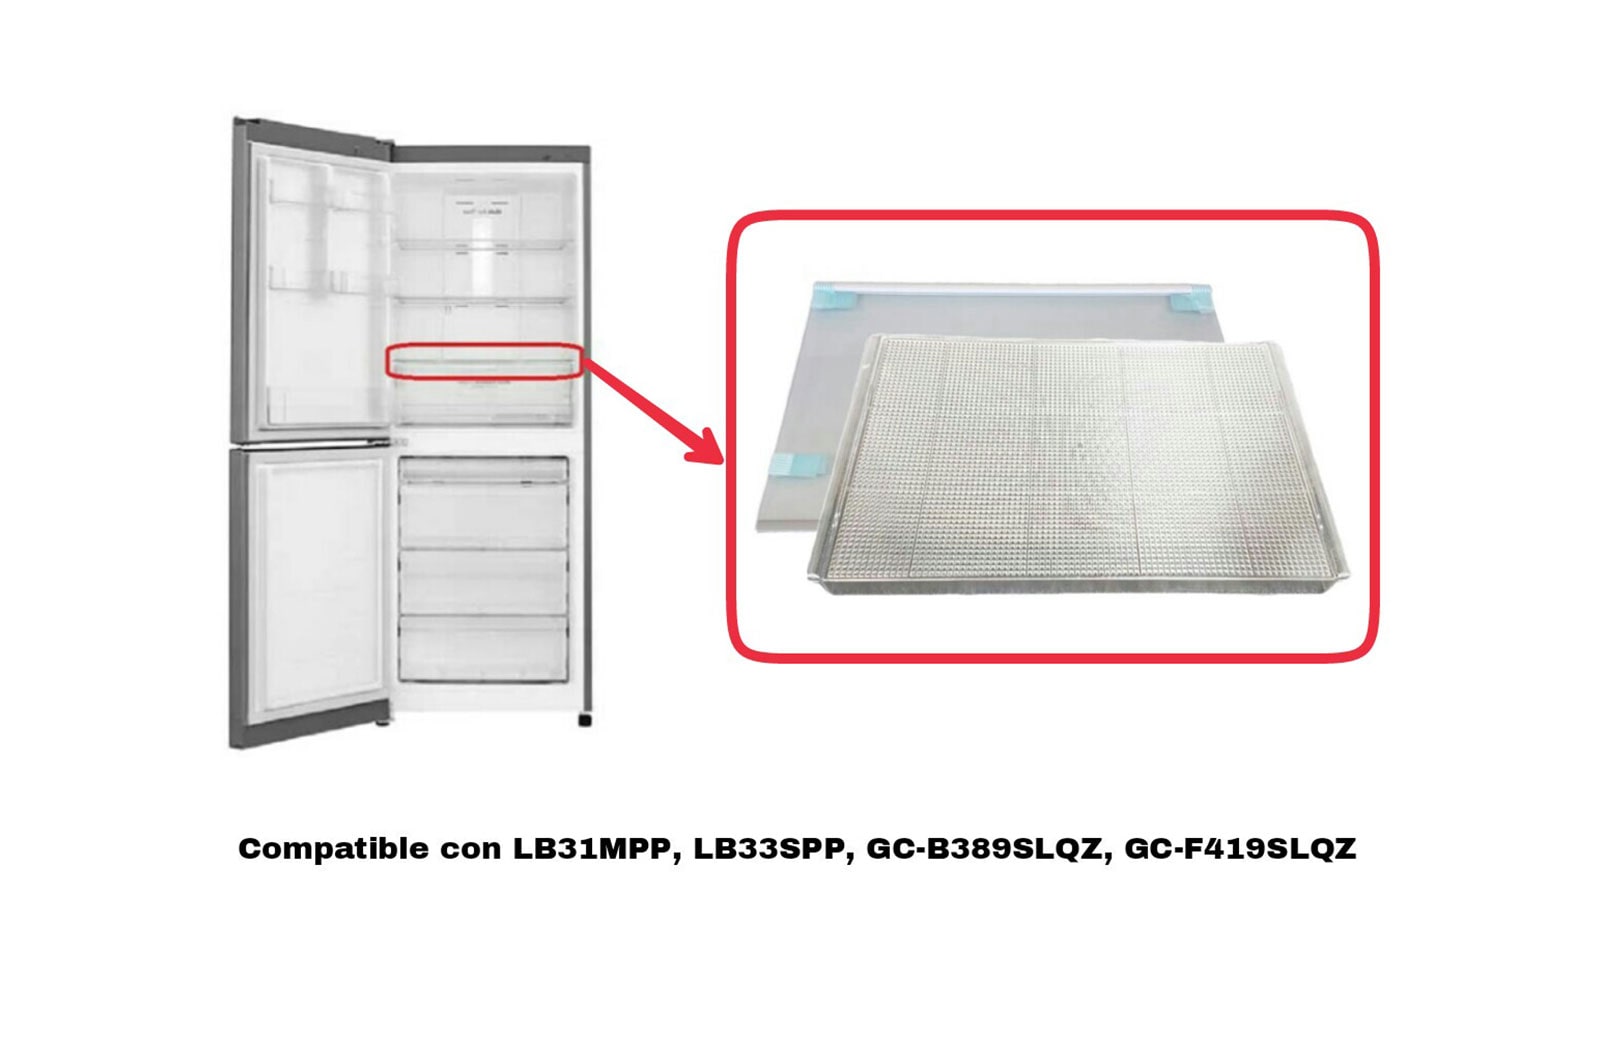 LG Kit Bandeja refrigerador, AHT73754307